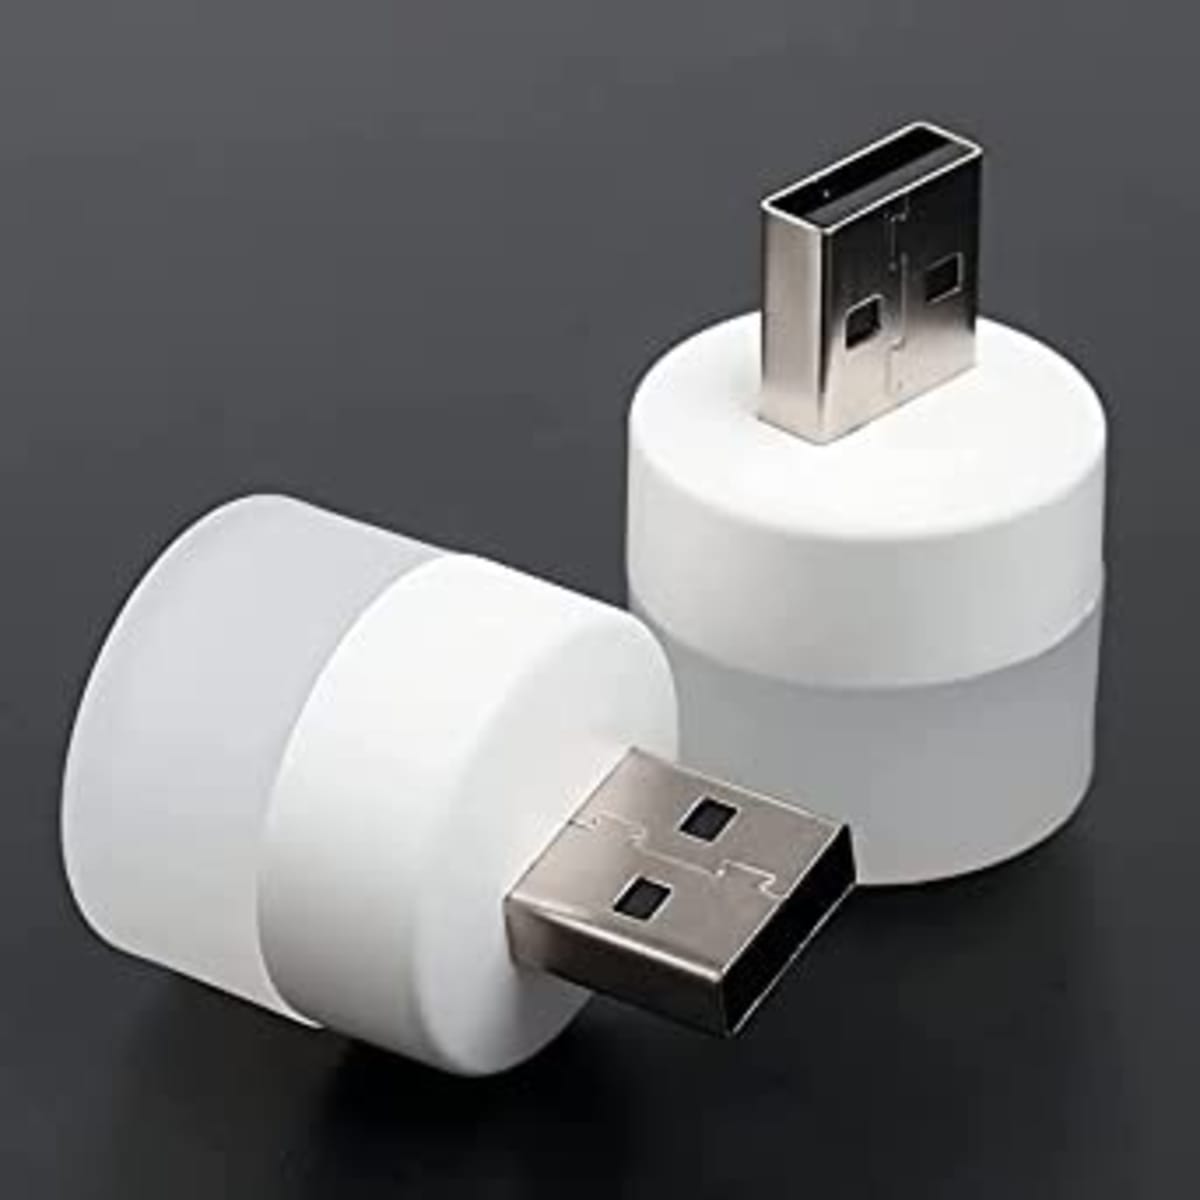 Mini USB Led Light - 6pcs